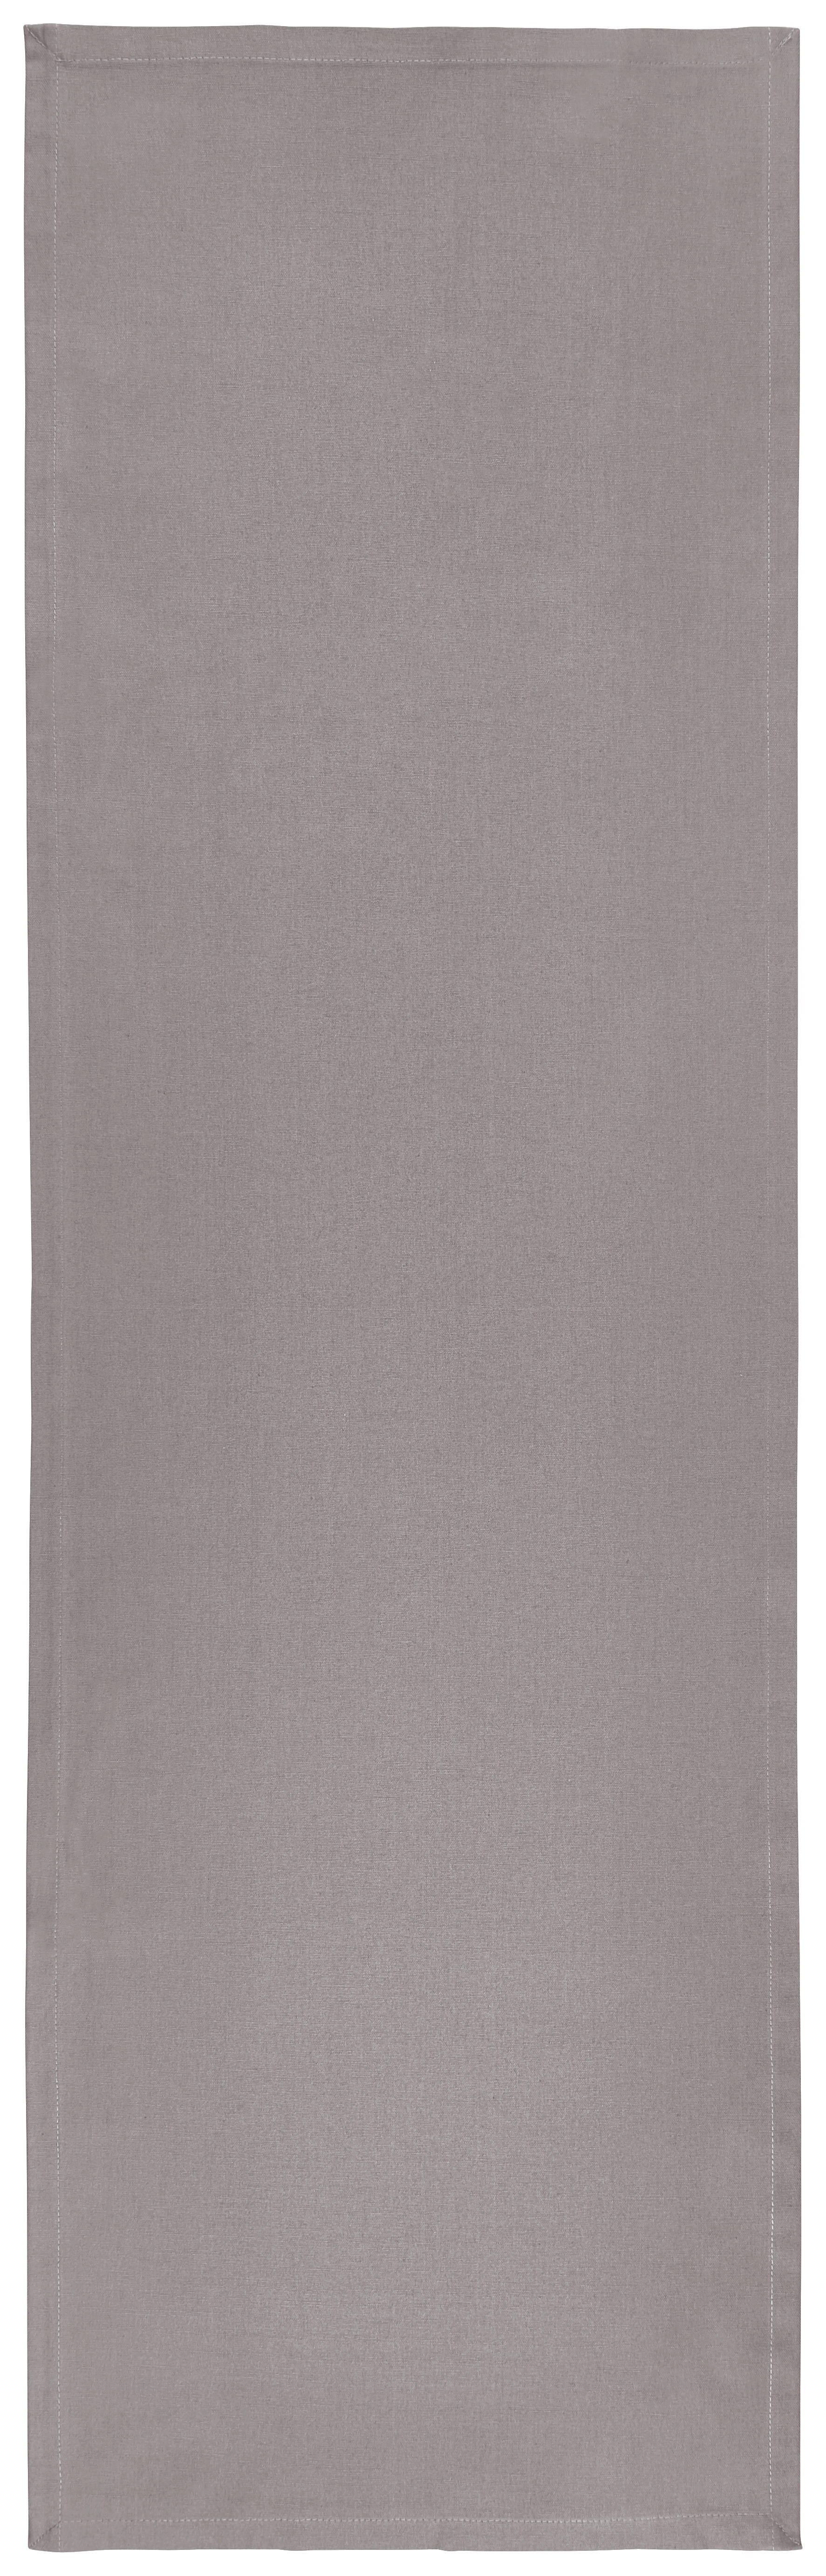 TISCHLÄUFER 45/150 cm   - Hellgrau, Basics, Textil (45/150cm) - Novel